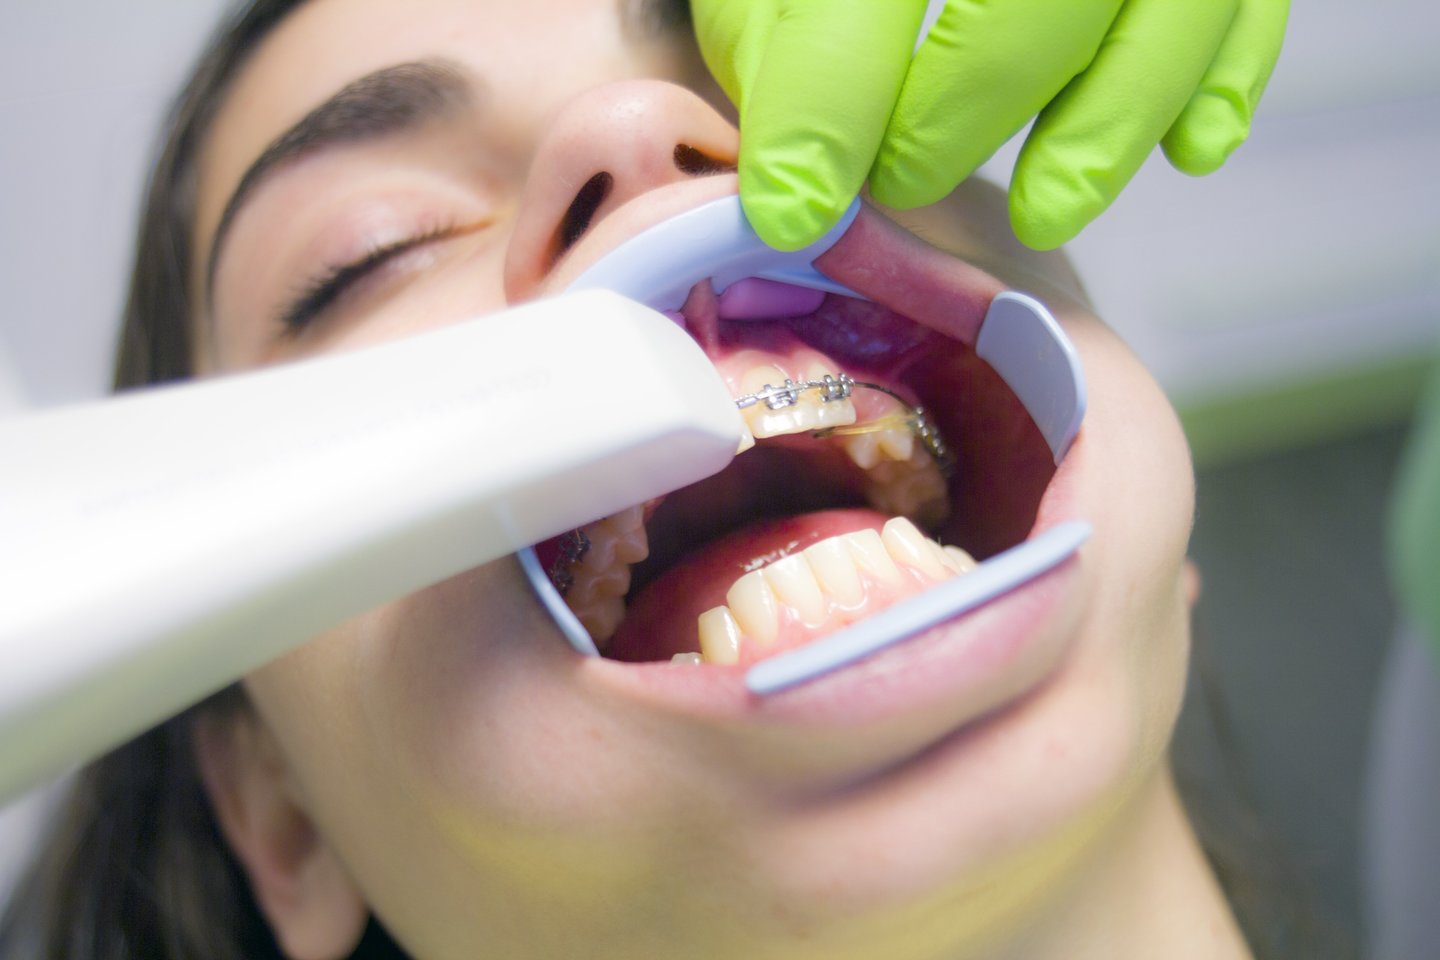 Gydytoja sako, kad, nors ortodontinių anomalijų yra daug, gydymas reikalingas ne visiems.